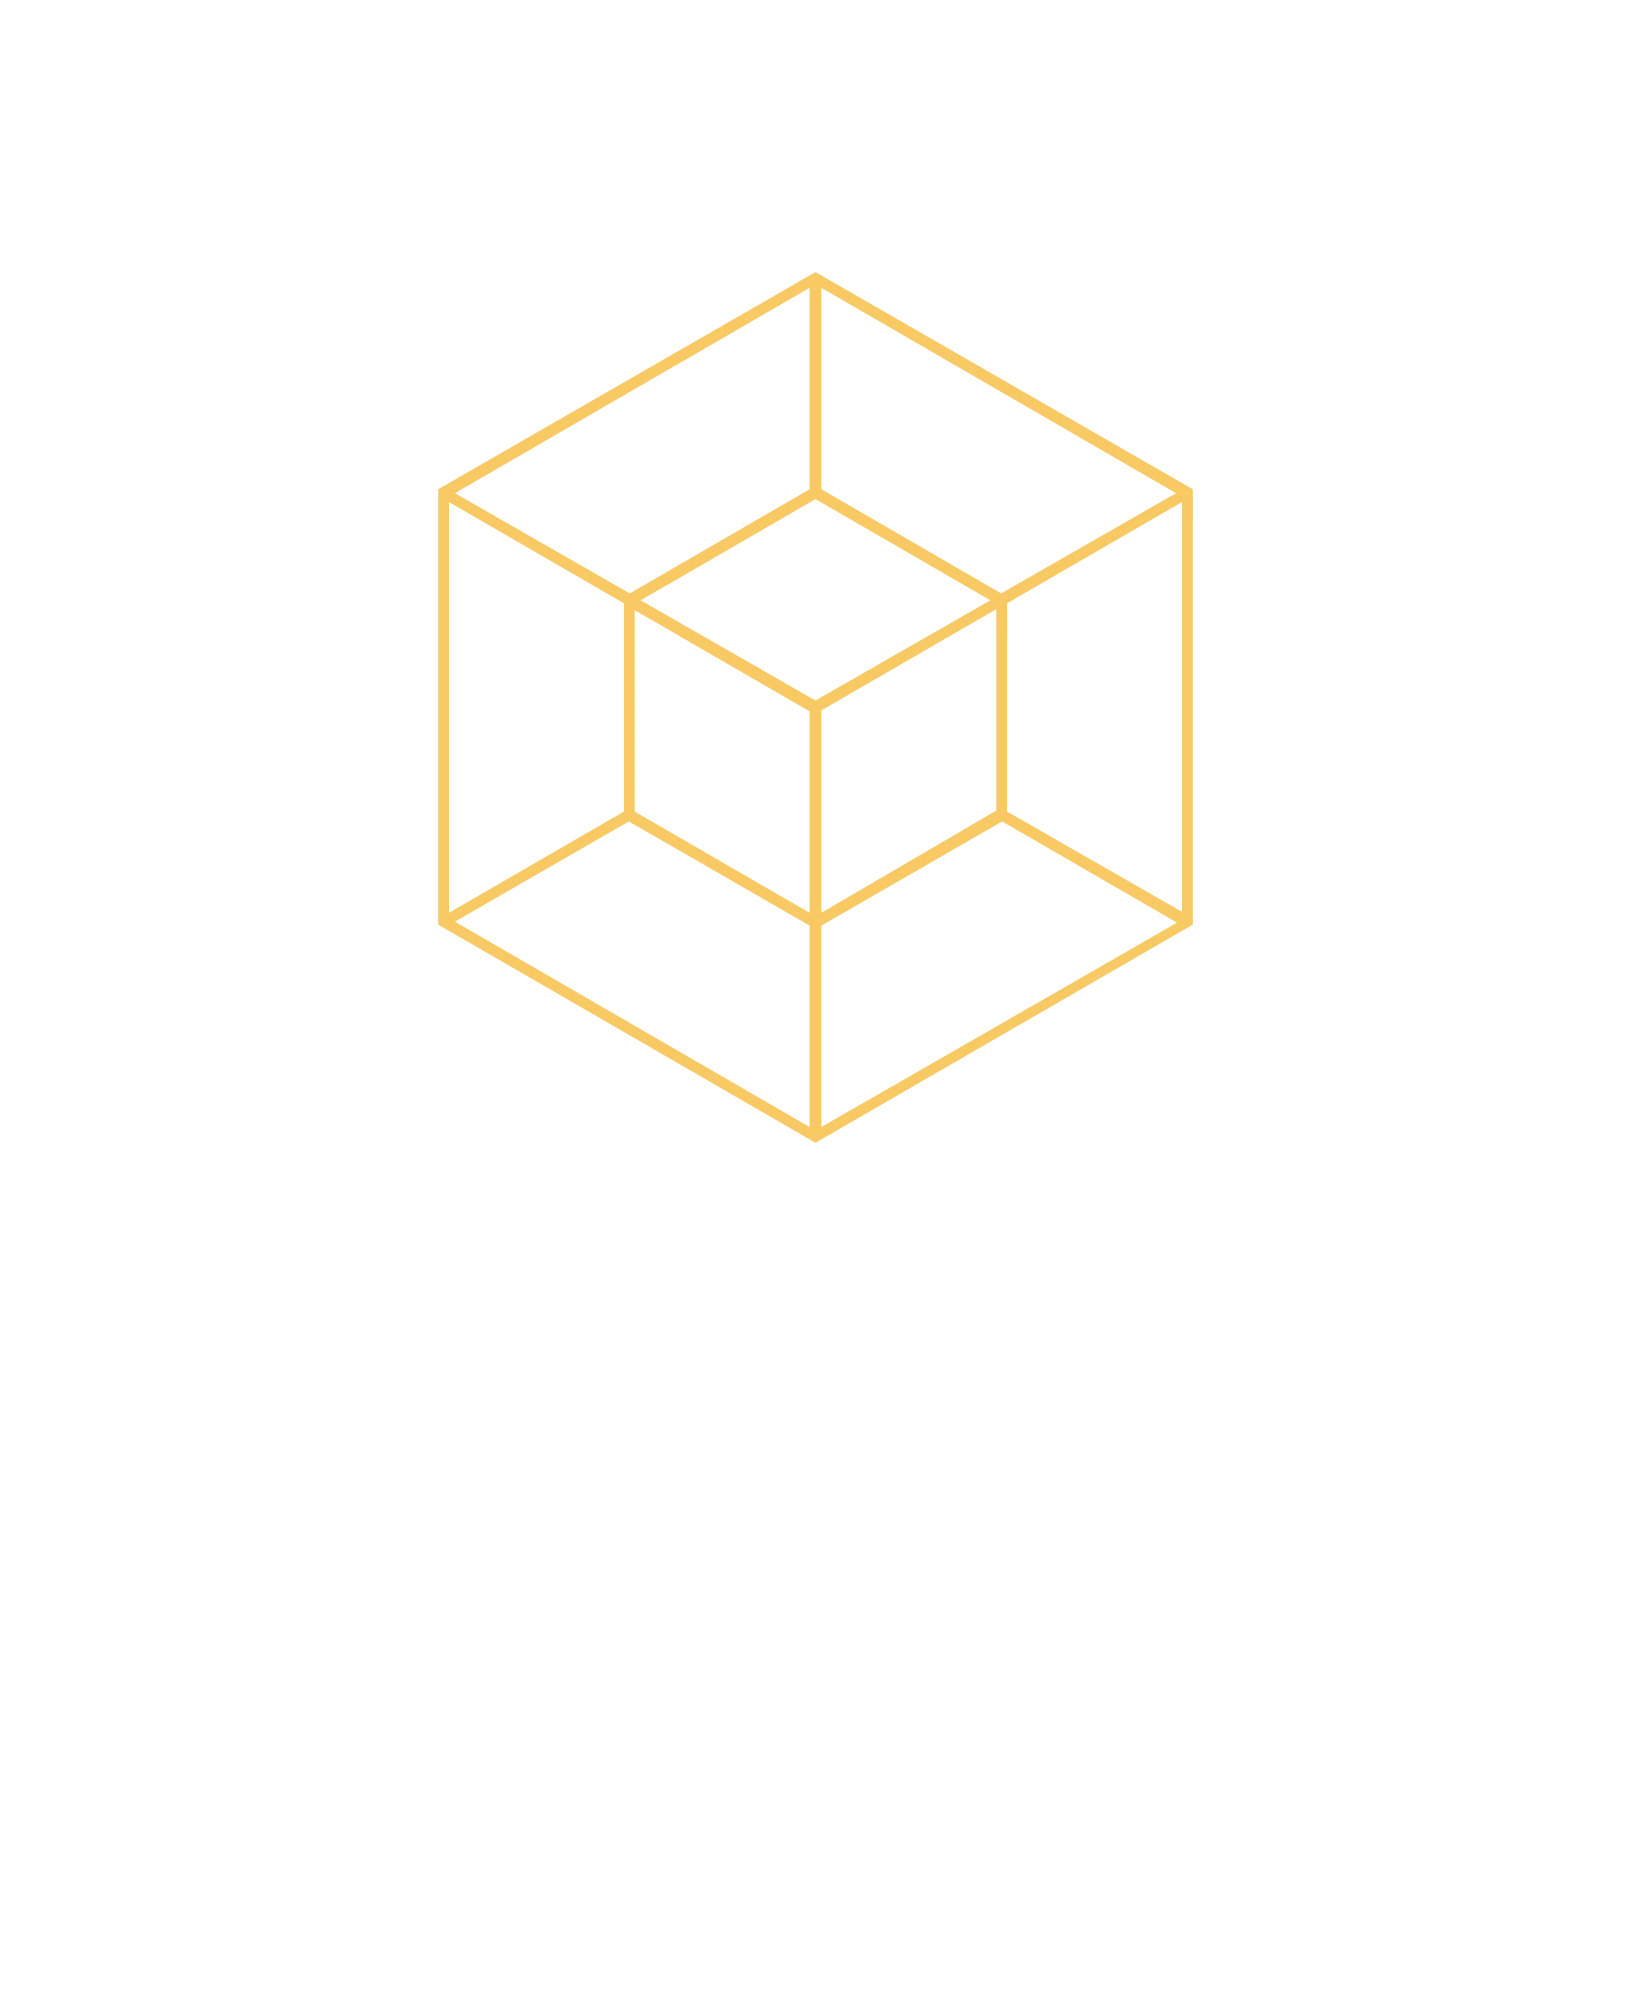 924-edify-logo-9-16957373604541.png